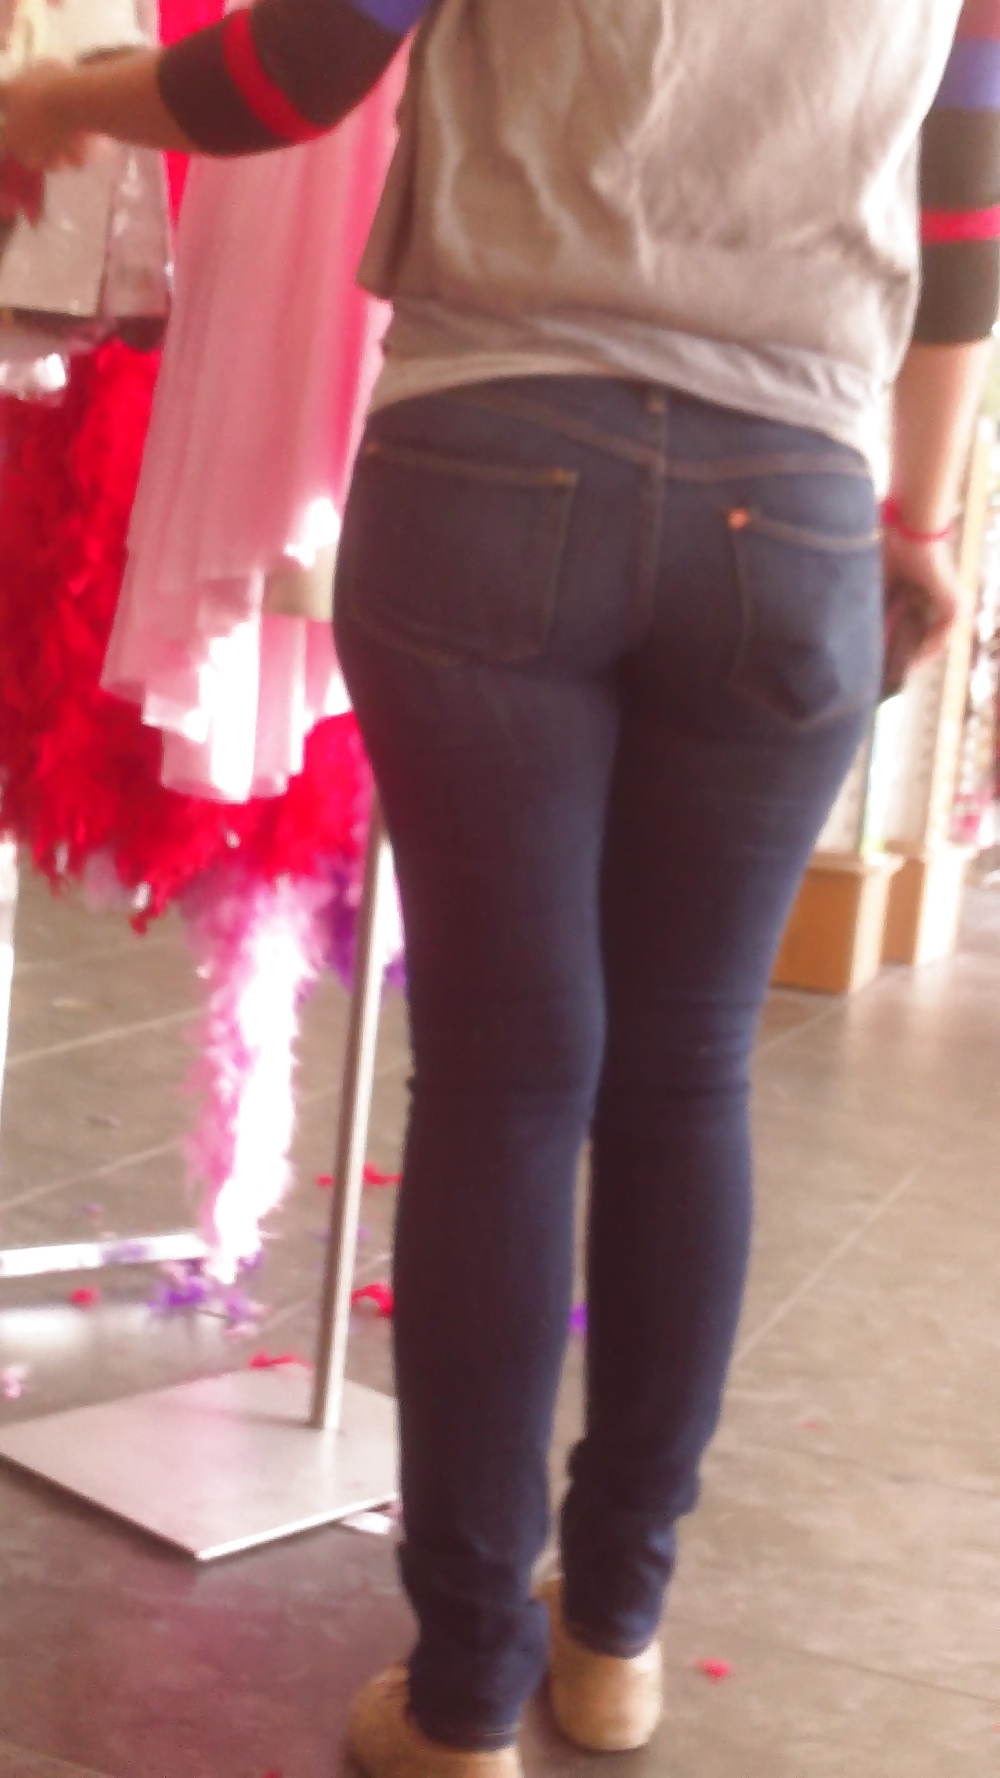 Popular teen girls ass & butt in jeans Part 6 #32009993